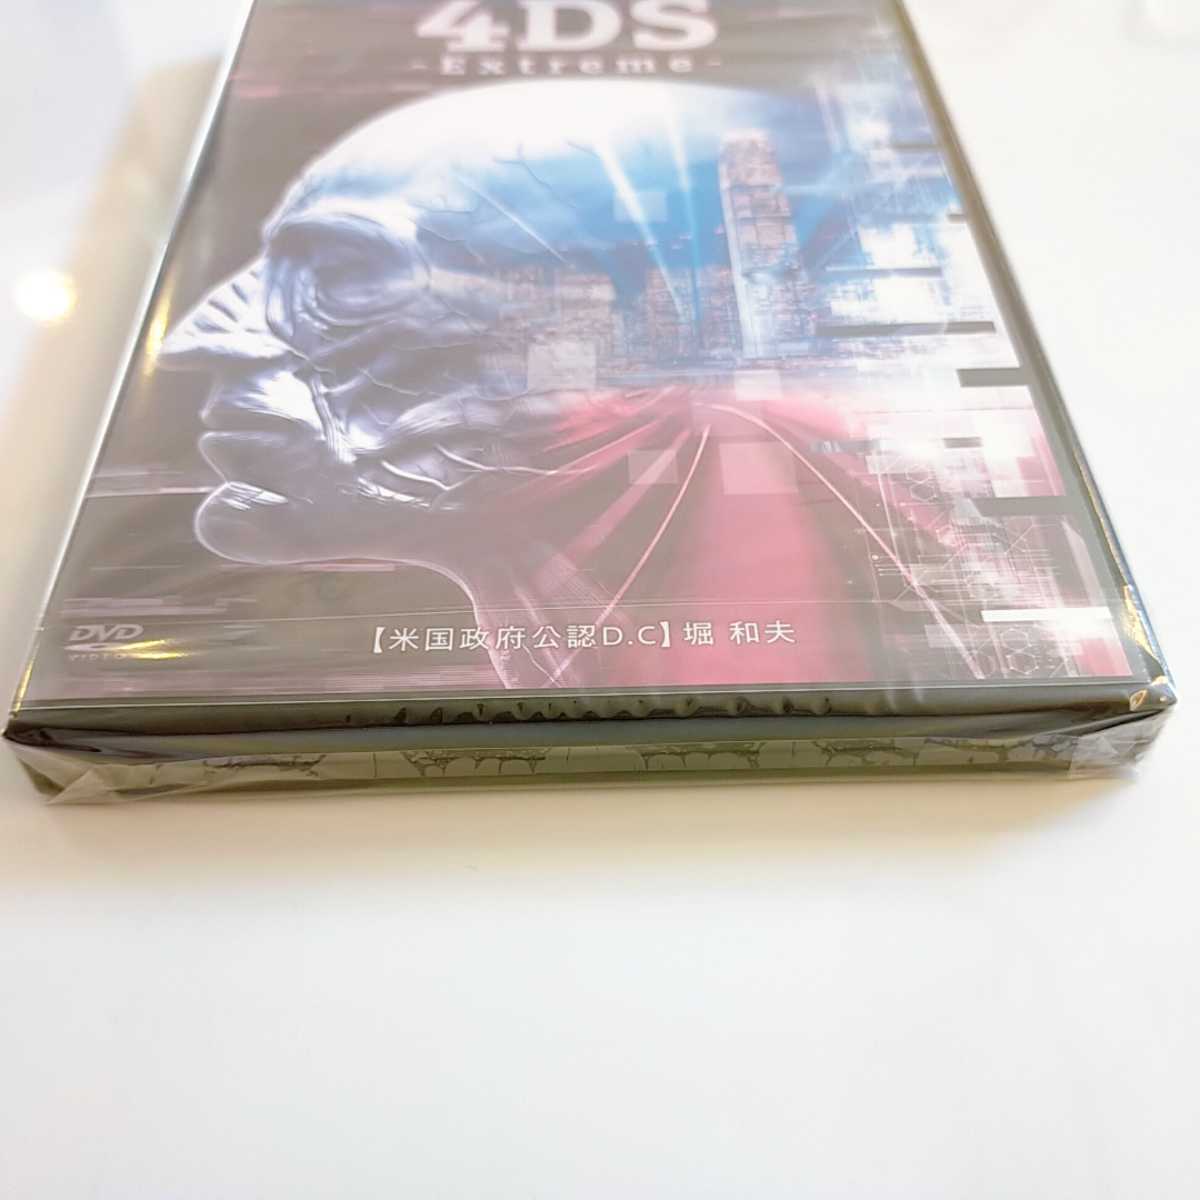 堀和夫「4DS-Extreme-」DVD４枚組＋特典DVDの+spbgp44.ru